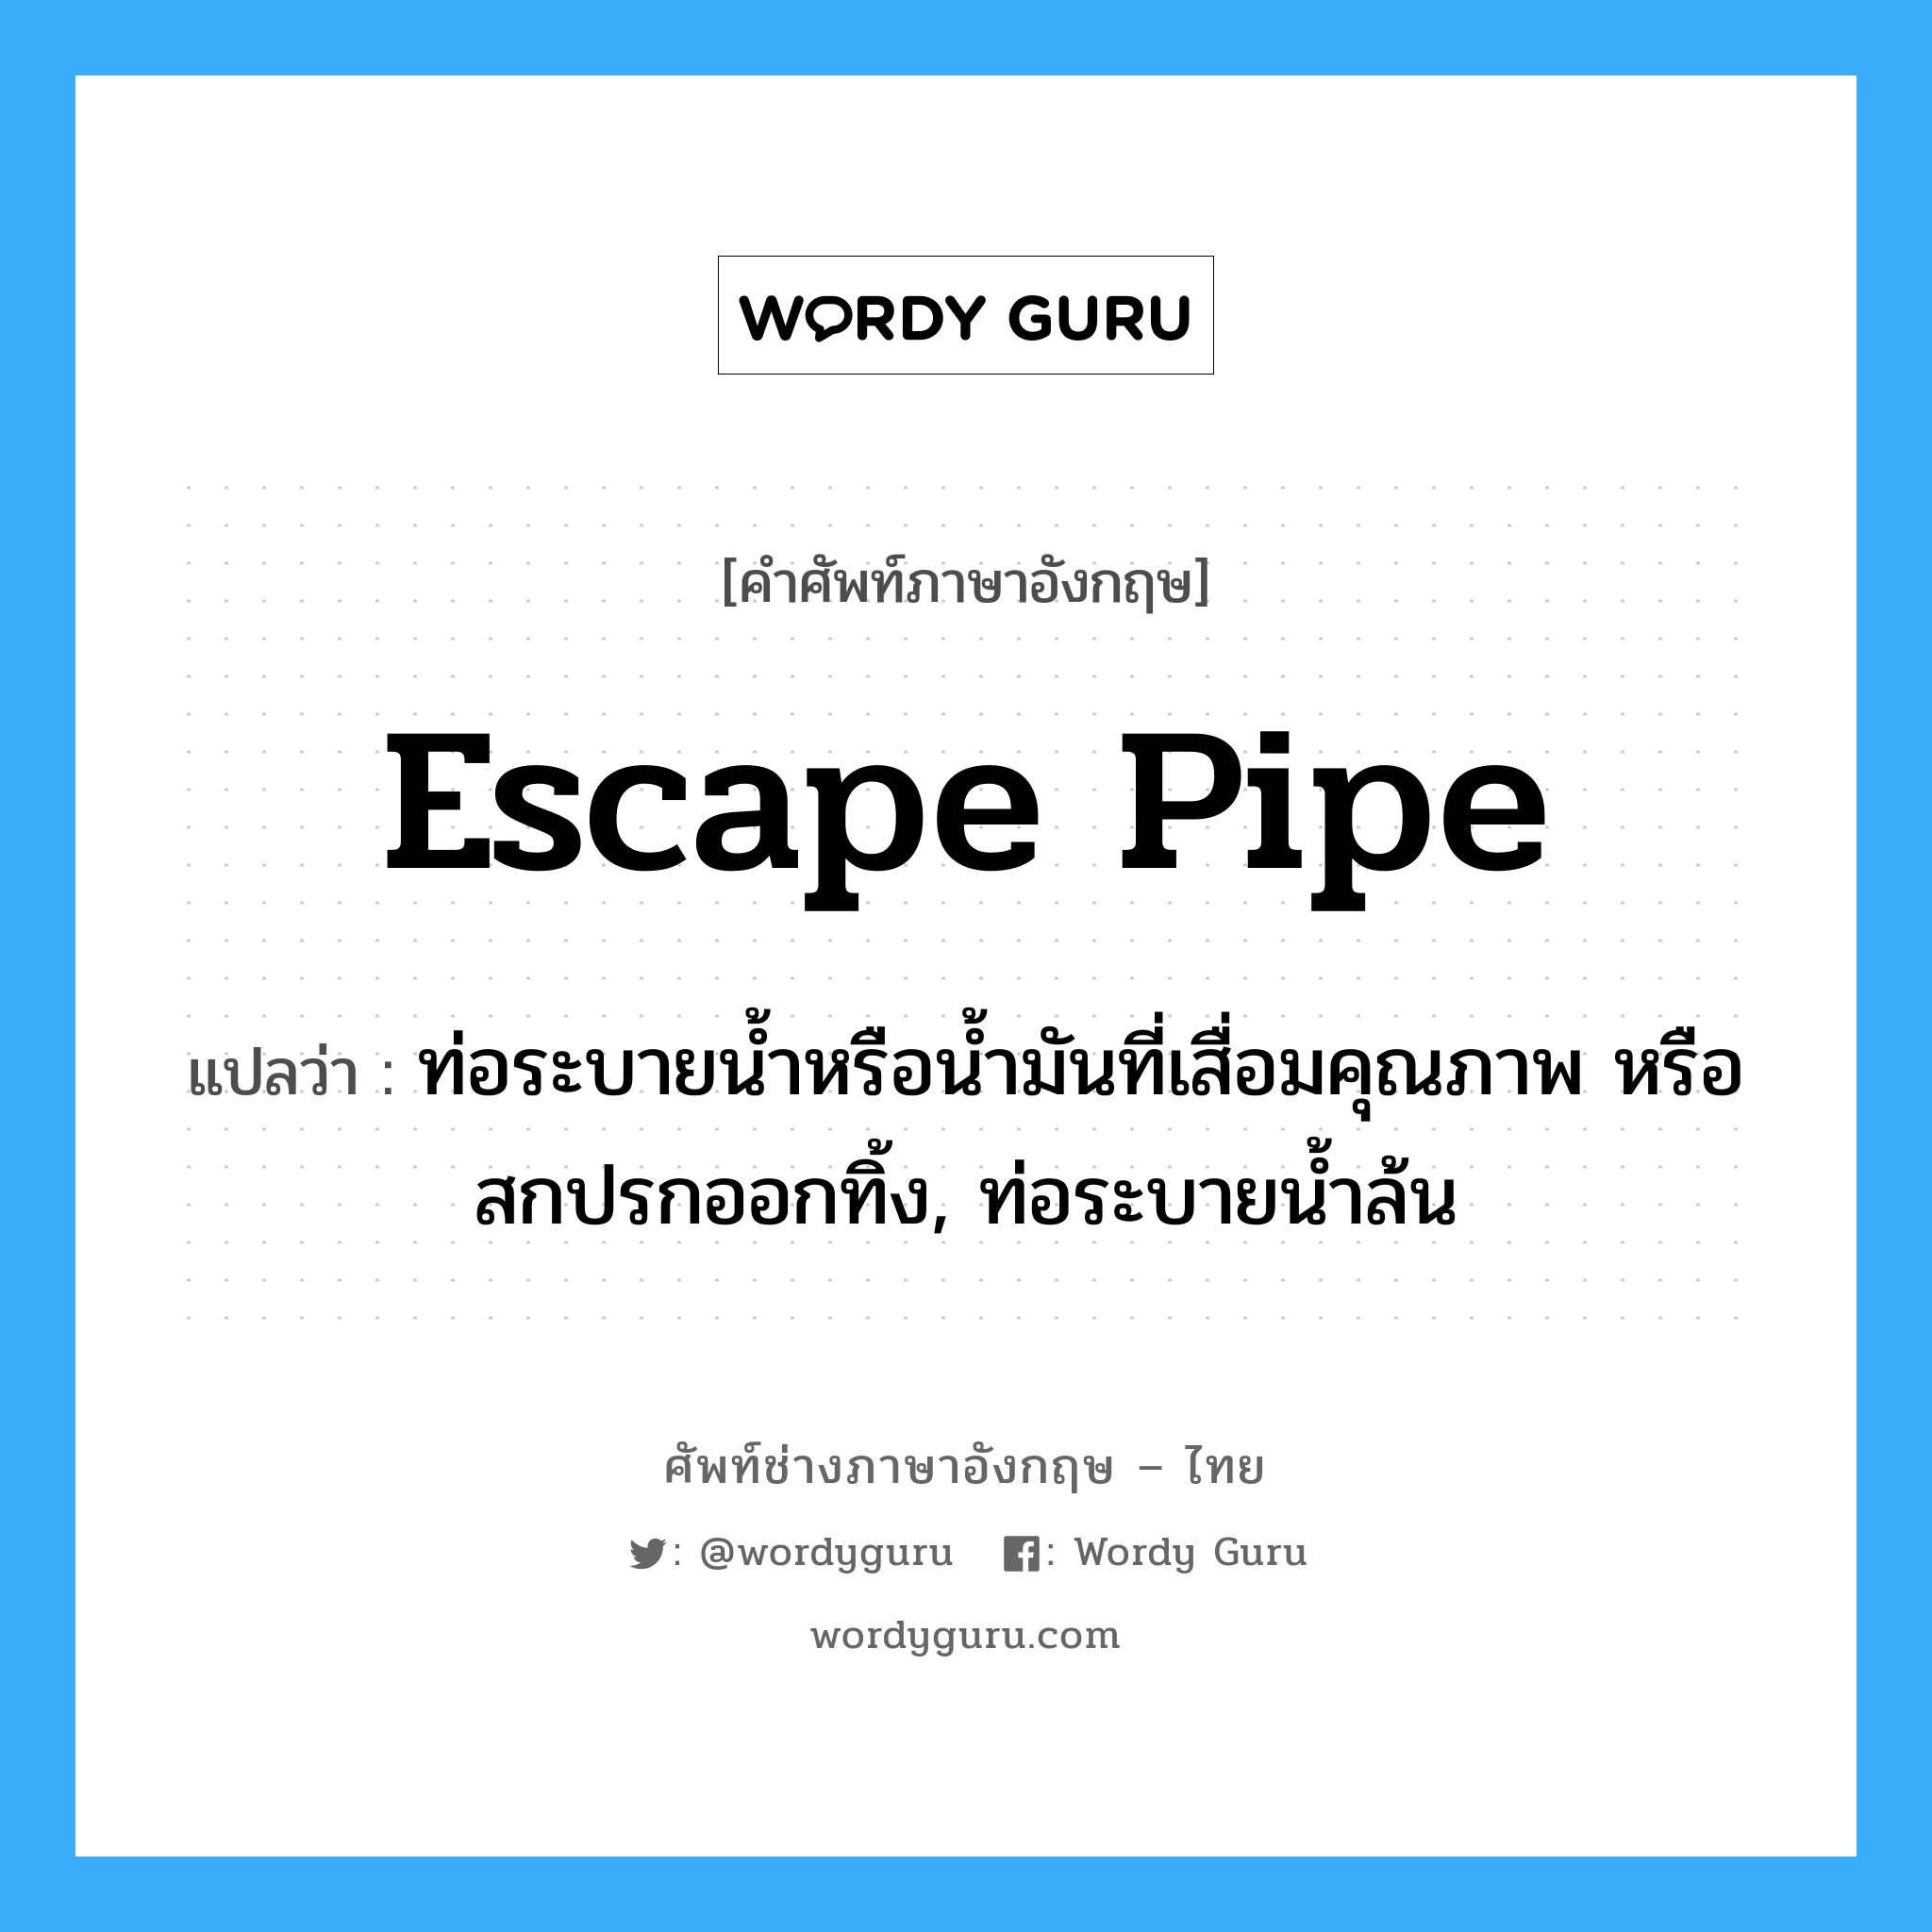 escape pipe แปลว่า?, คำศัพท์ช่างภาษาอังกฤษ - ไทย escape pipe คำศัพท์ภาษาอังกฤษ escape pipe แปลว่า ท่อระบายน้ำหรือน้ำมันที่เสื่อมคุณภาพ หรือสกปรกออกทิ้ง, ท่อระบายน้ำล้น